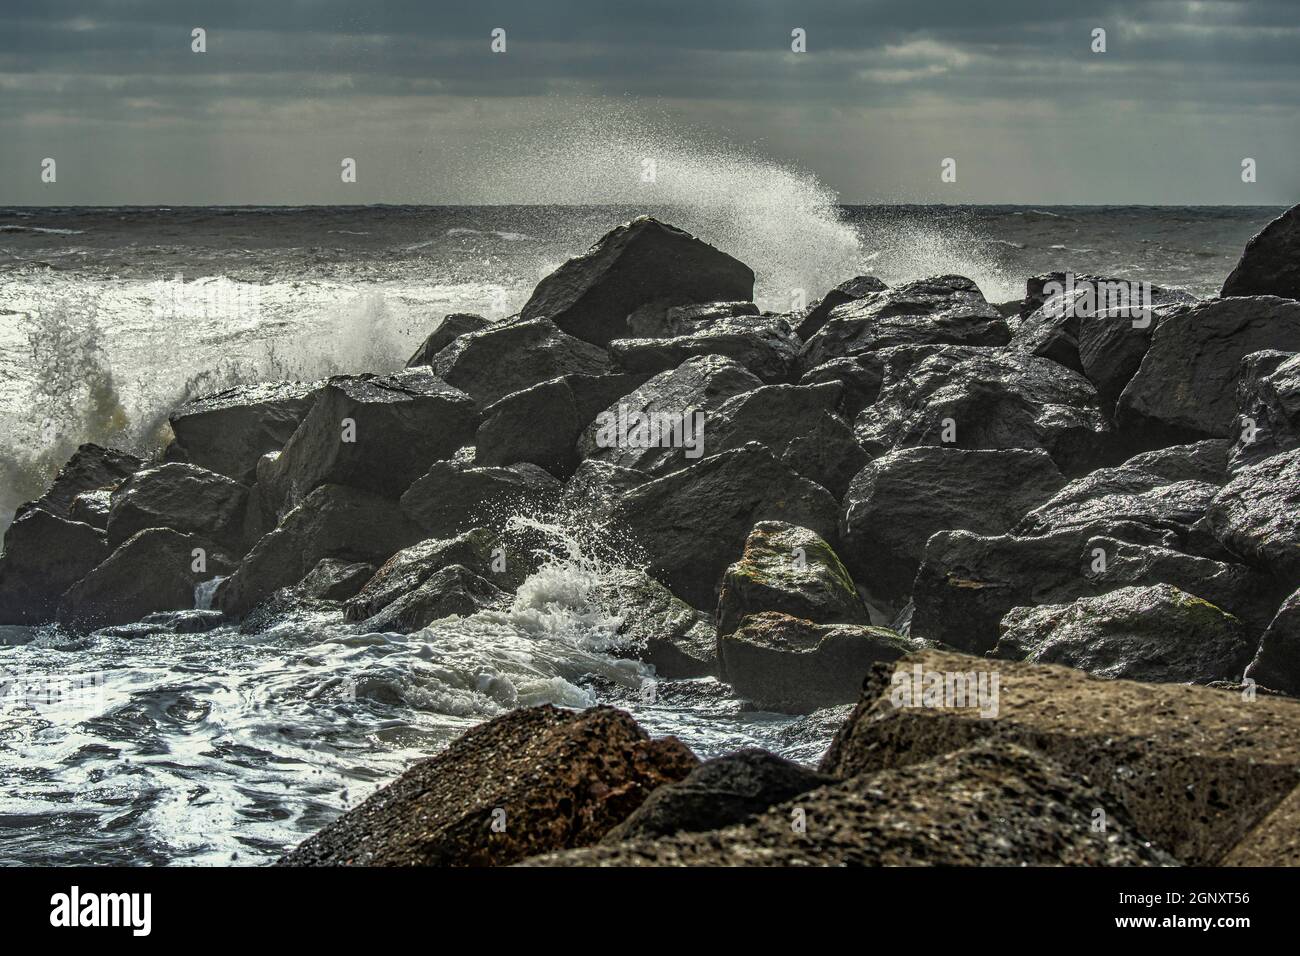 Die Nordsee stürzt mit hohen Wellen und Schaumspray gegen die Felsen. Nordsee, Dänemark, Europa Stockfoto